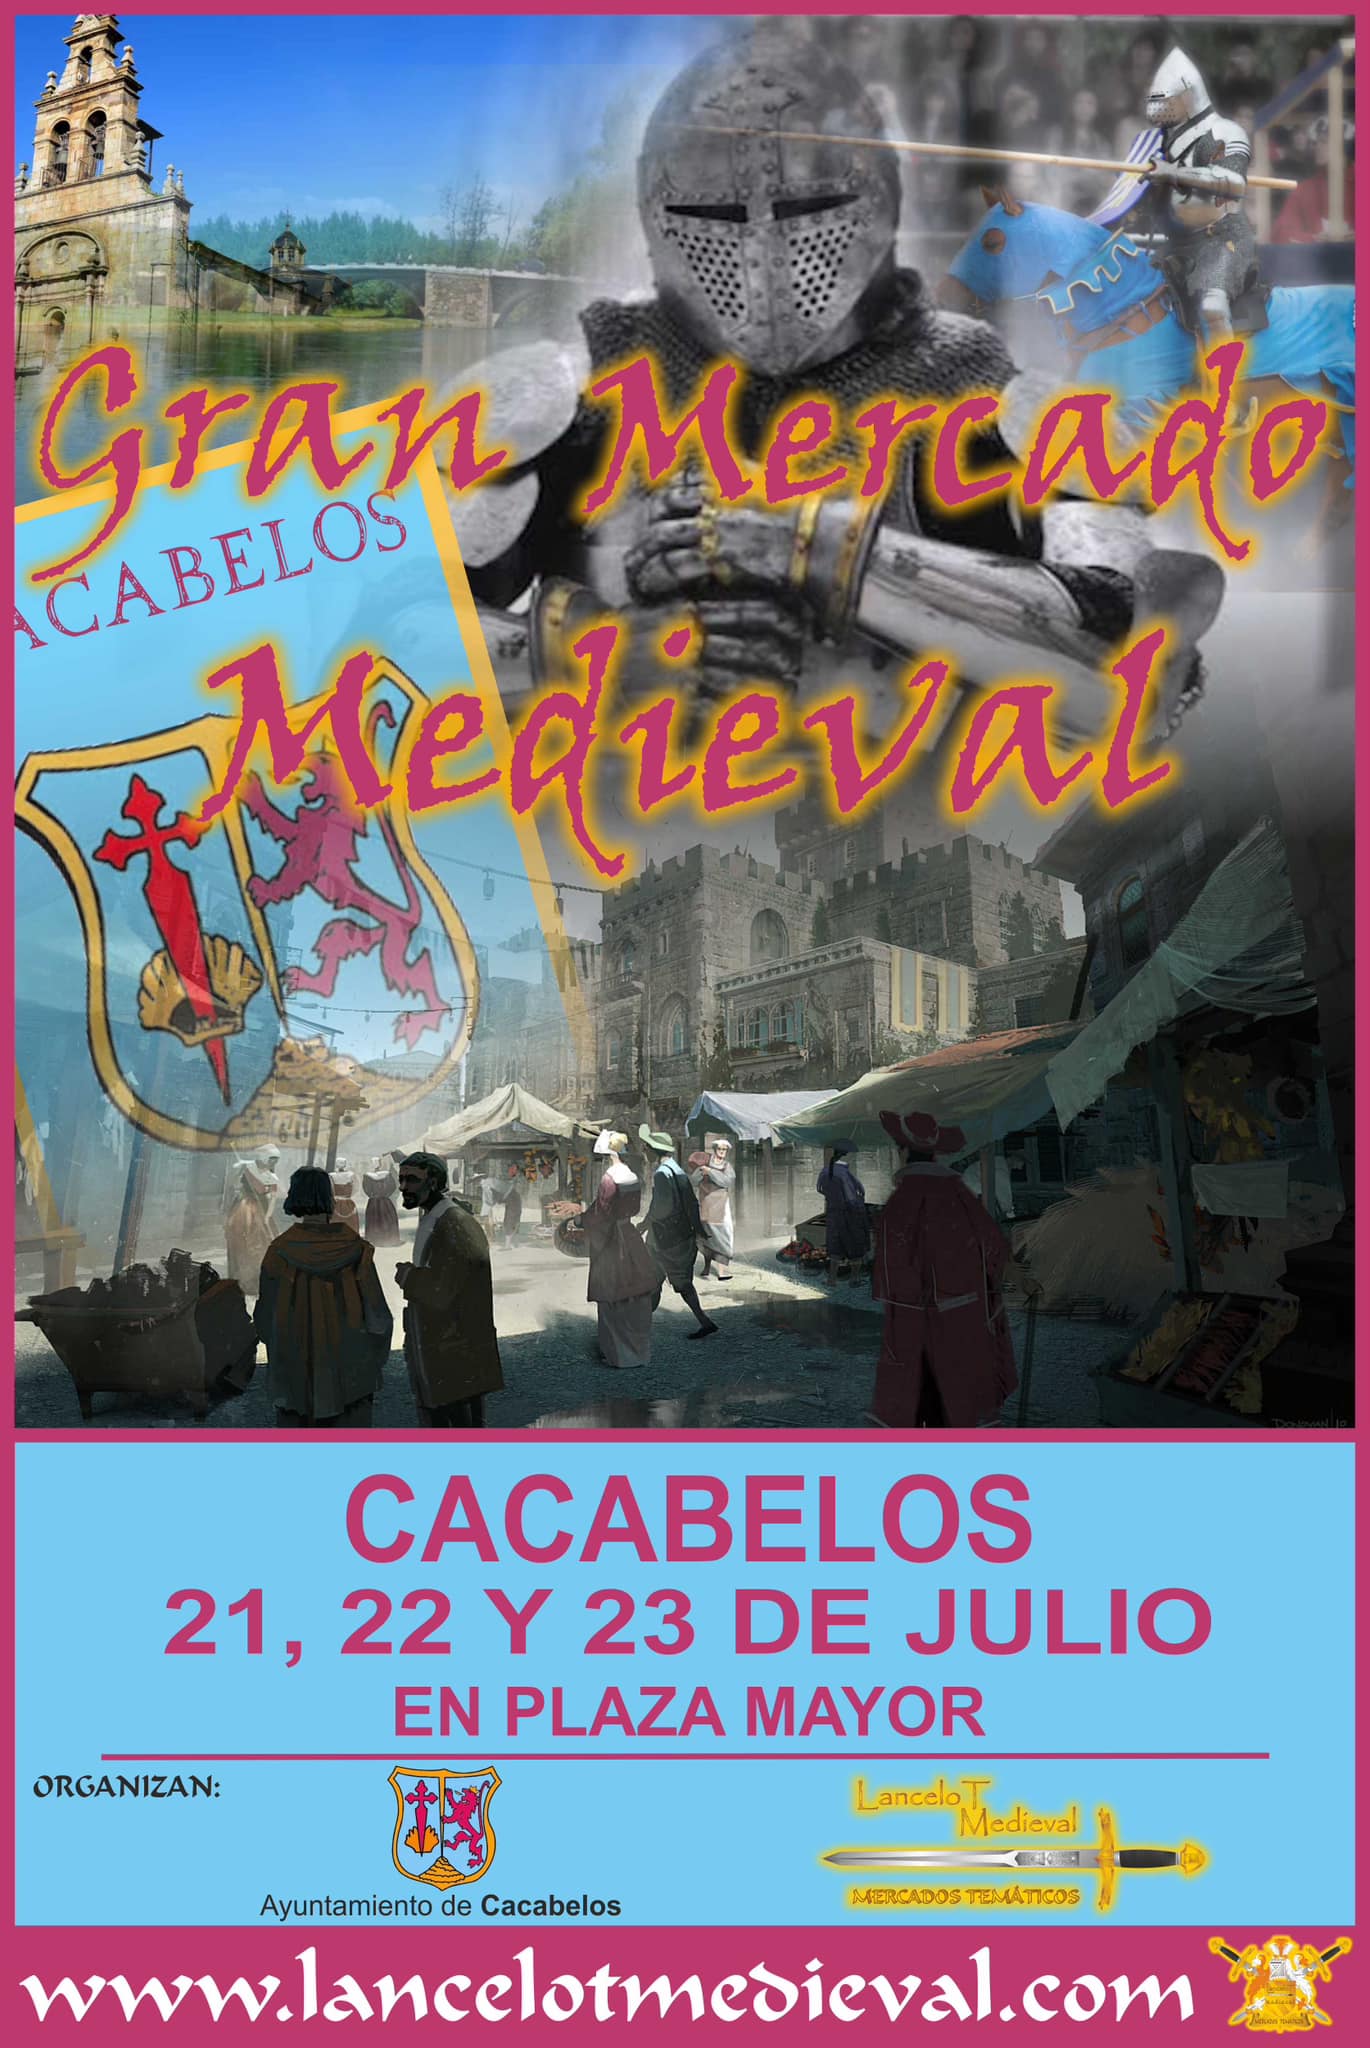 Cacabelos anuncia una nueva edición del gran mercado Medieval veraniego 2